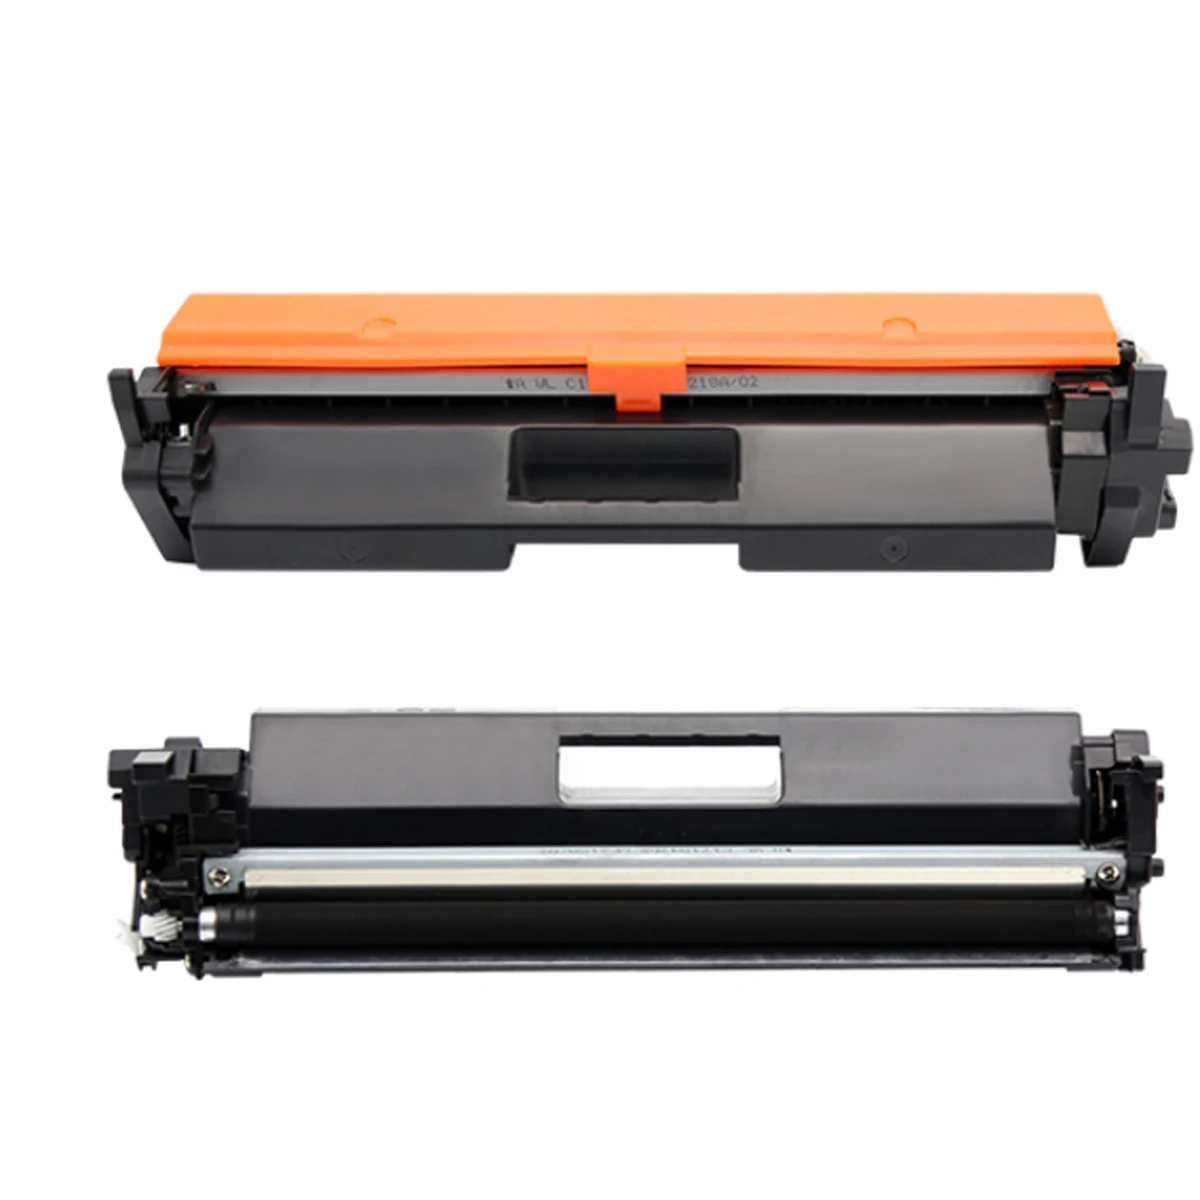 

Картридж с тонером для принтера HP LaserJet Pro M102/M102a/M102w/MFP M130/M130a/M130fn/M130fw/M130nw/для HP CF217a/17A